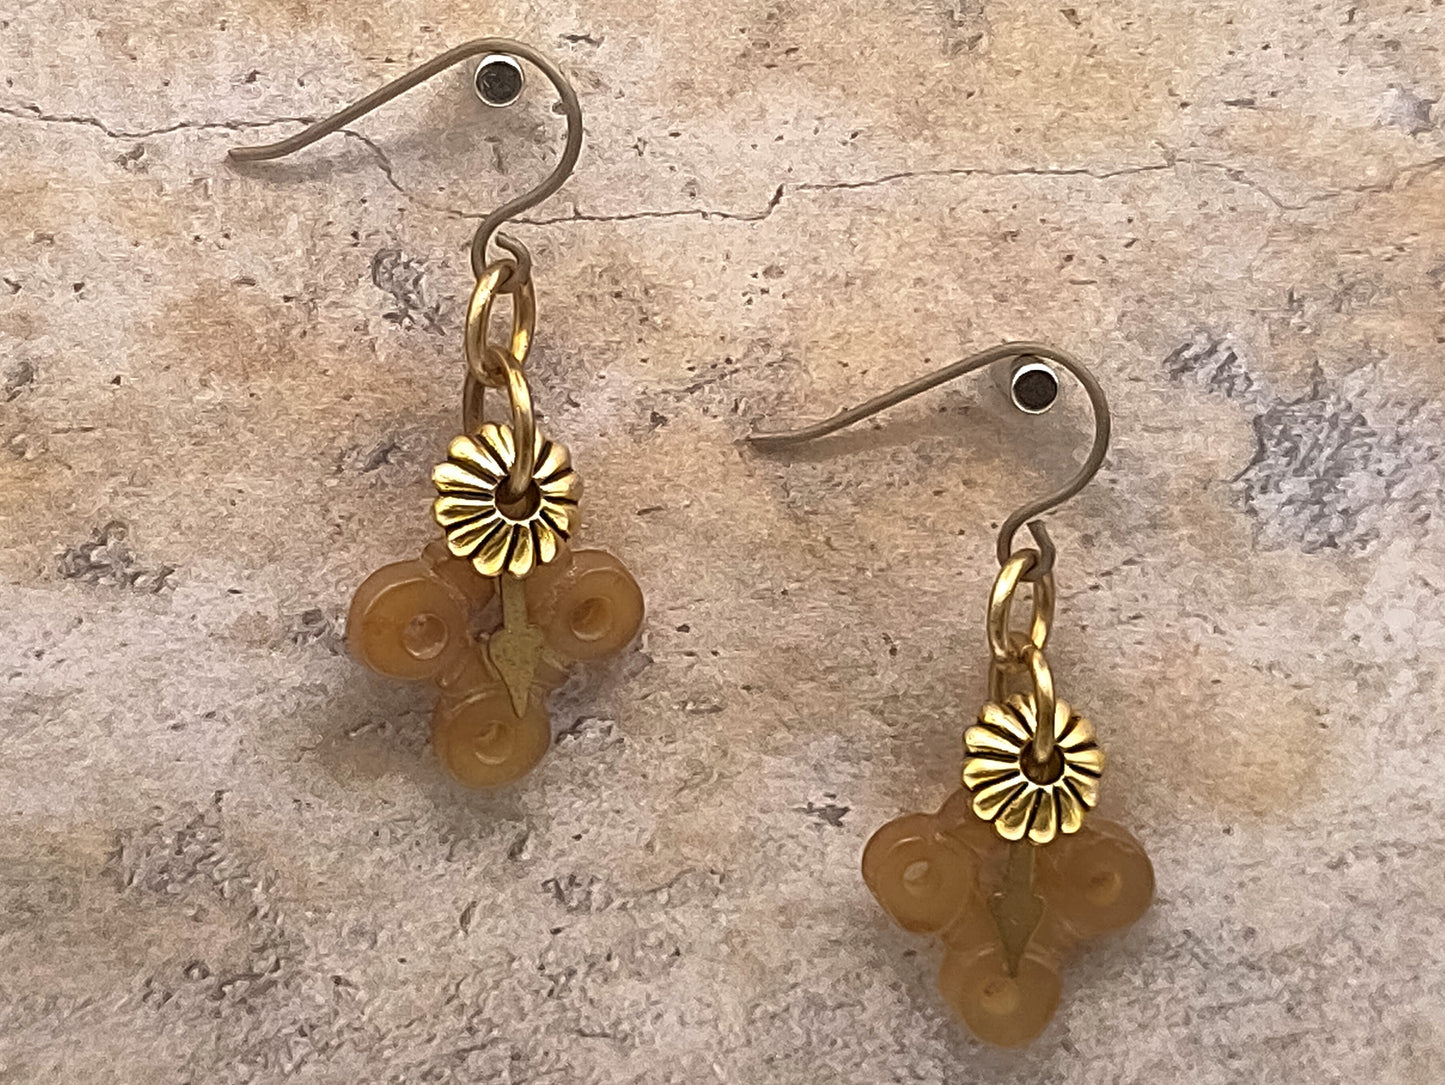 Amber Steampunk earrings